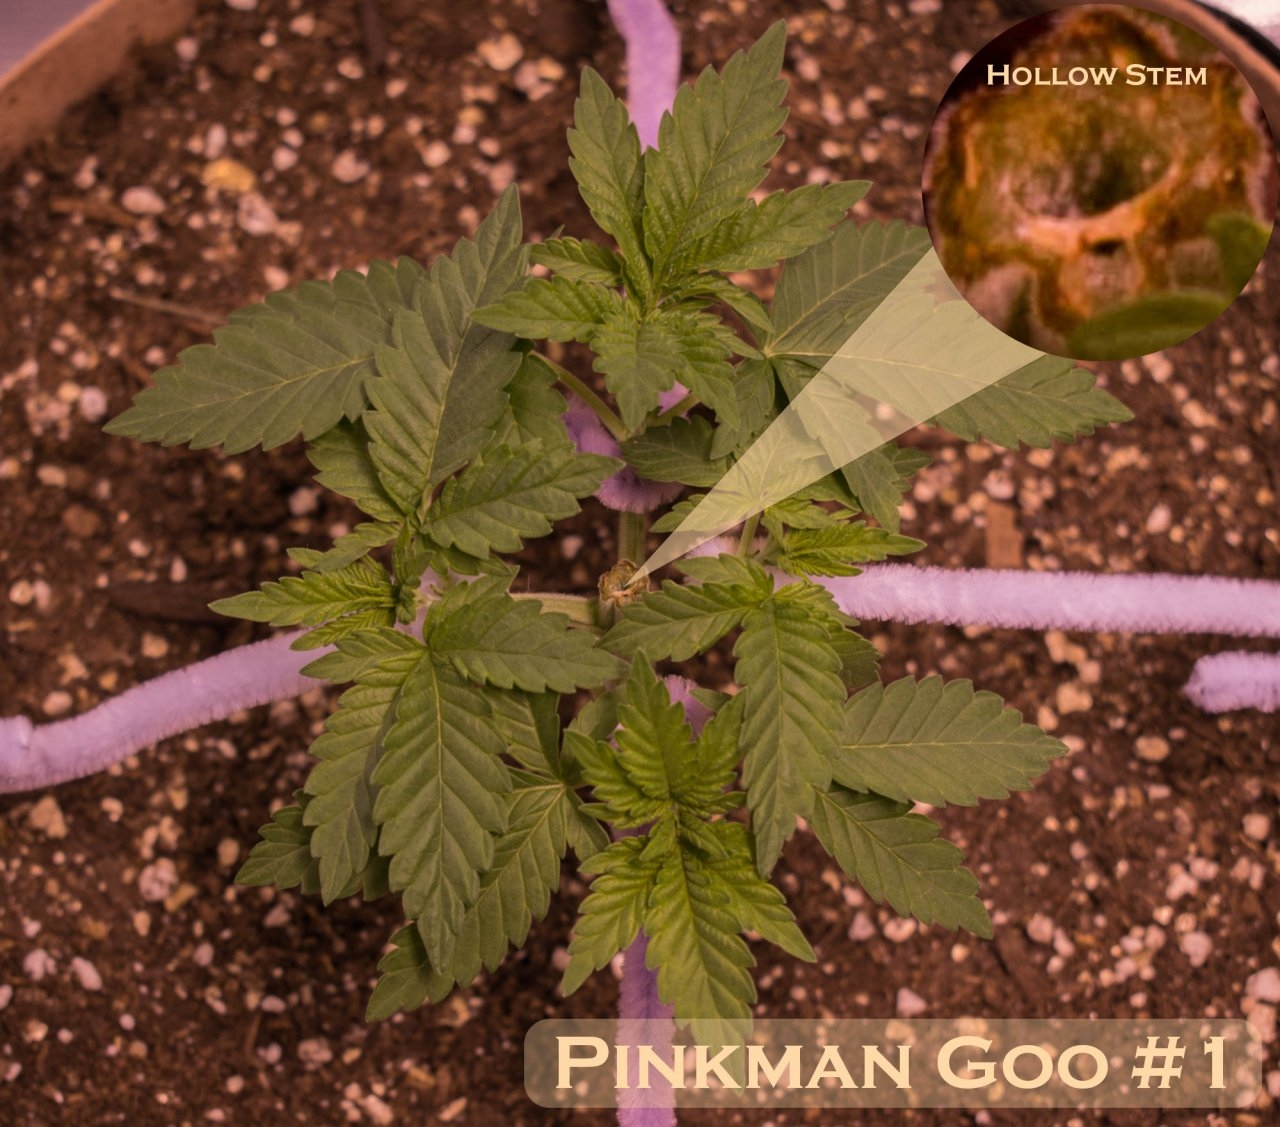 Pinkman Goo #1